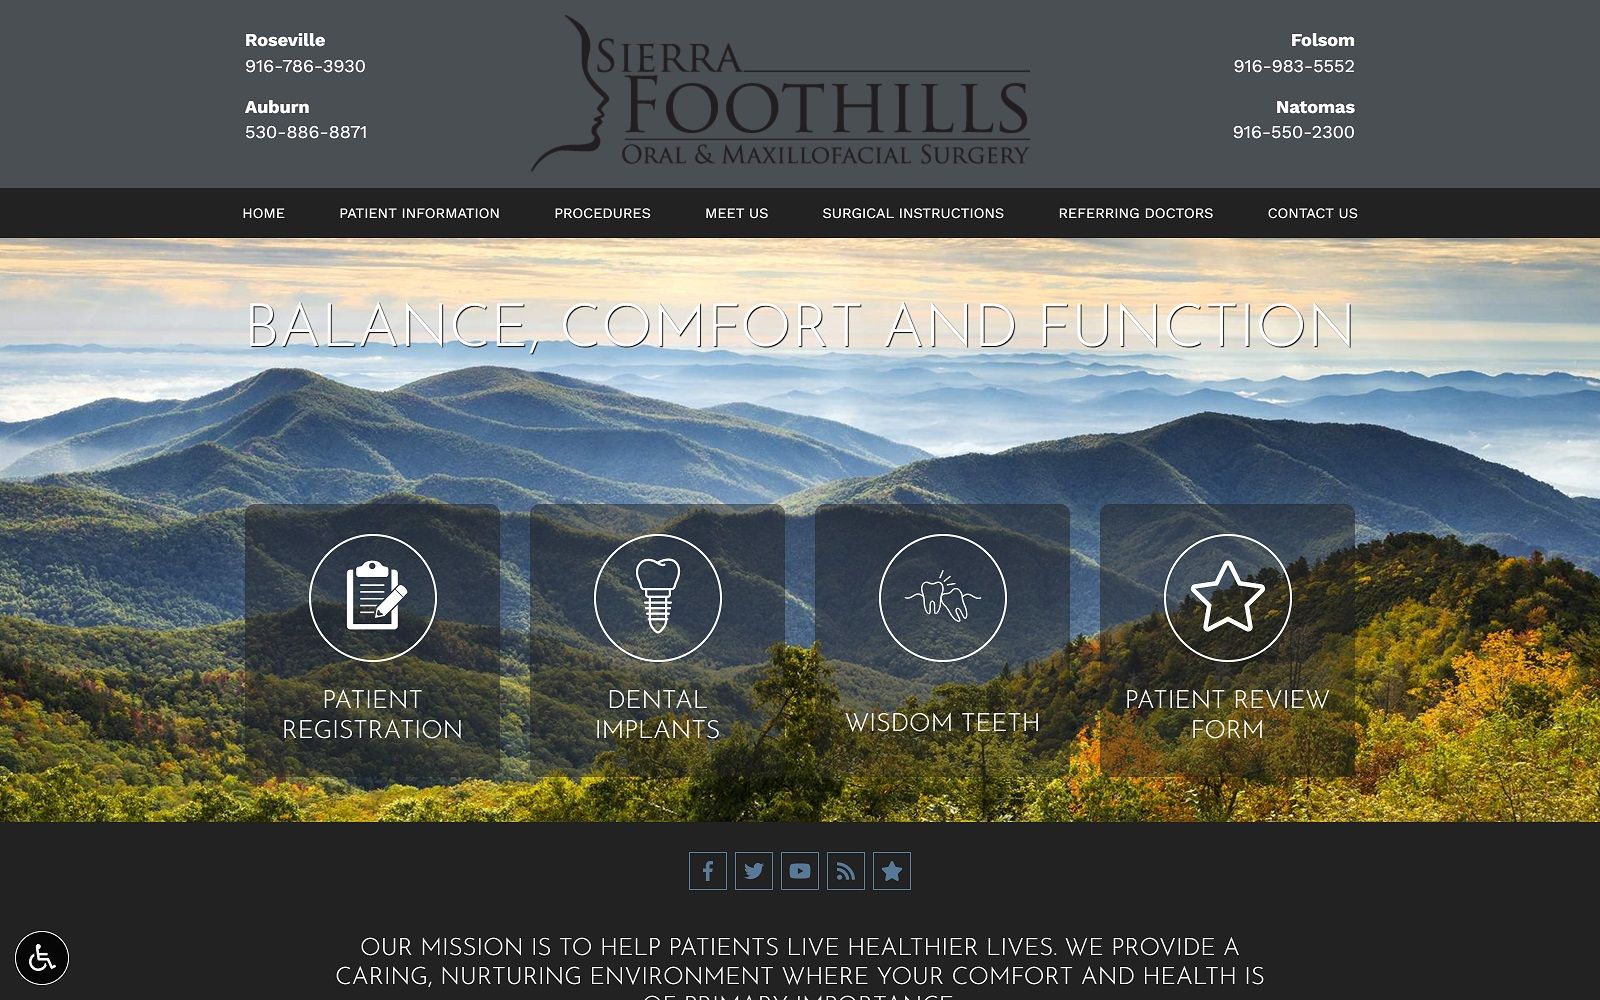 The screenshot of sierra foothills oral & maxillofacial surgery sierrafoothillsoralsurgery. Com website